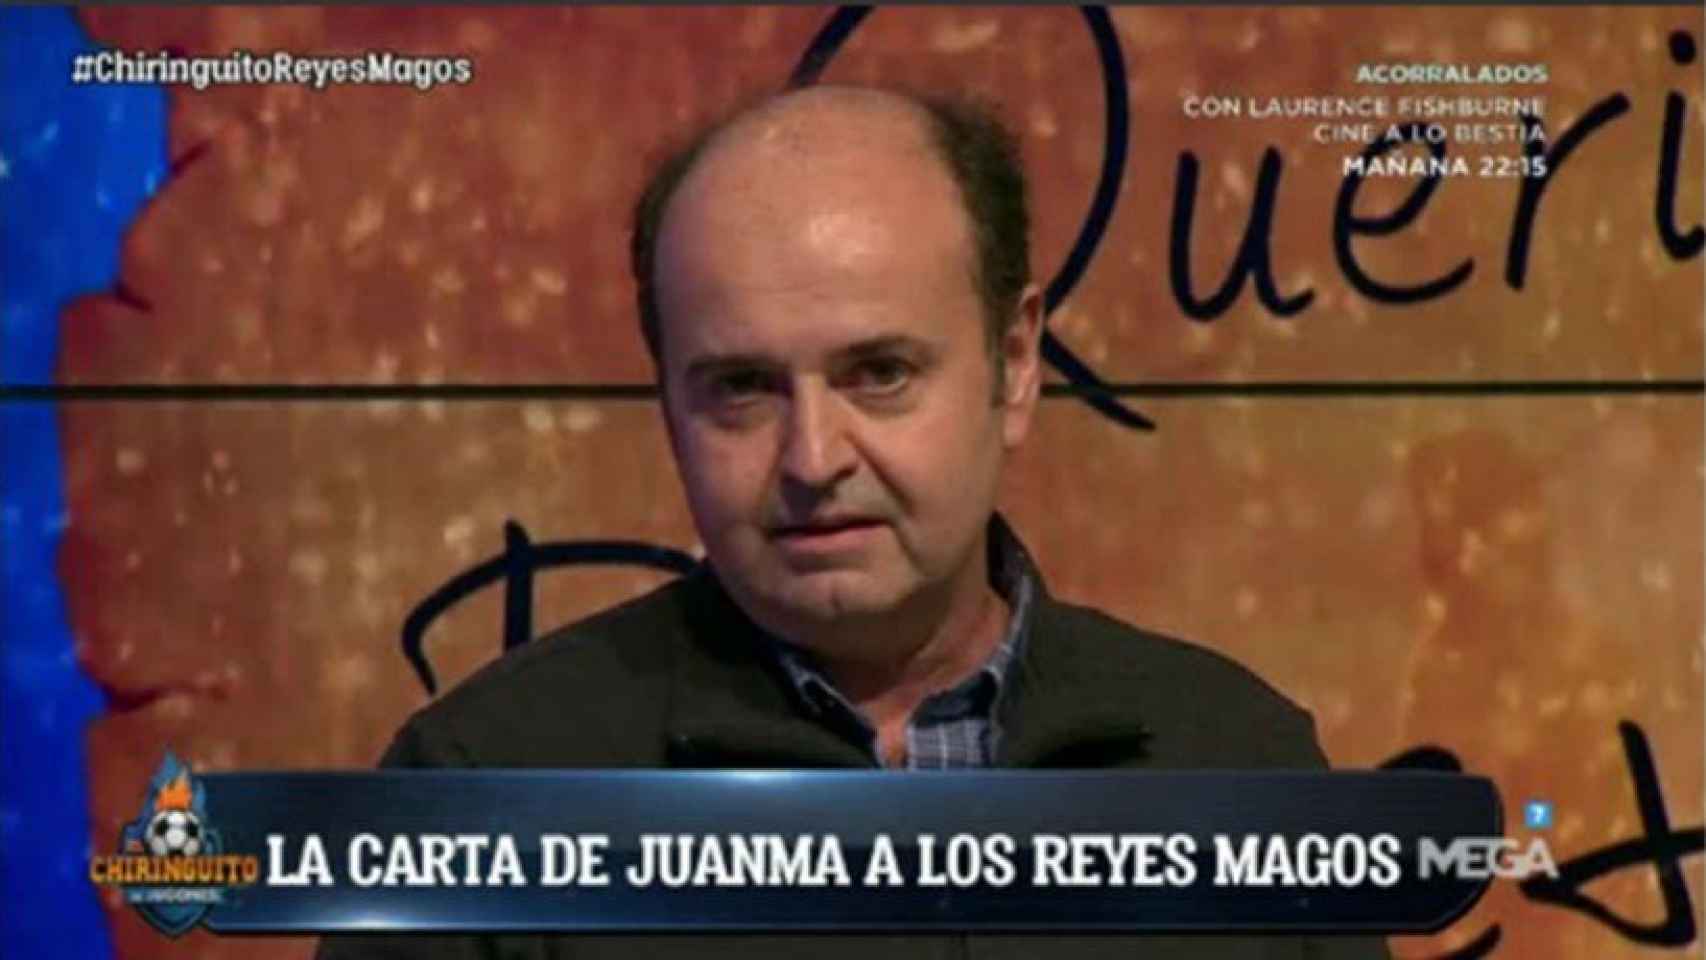 Juanma Rodríguez en El Chiringuito leyendo su carta a los Reyes Magos. Foto: Twitter (@elchiringuitotv)